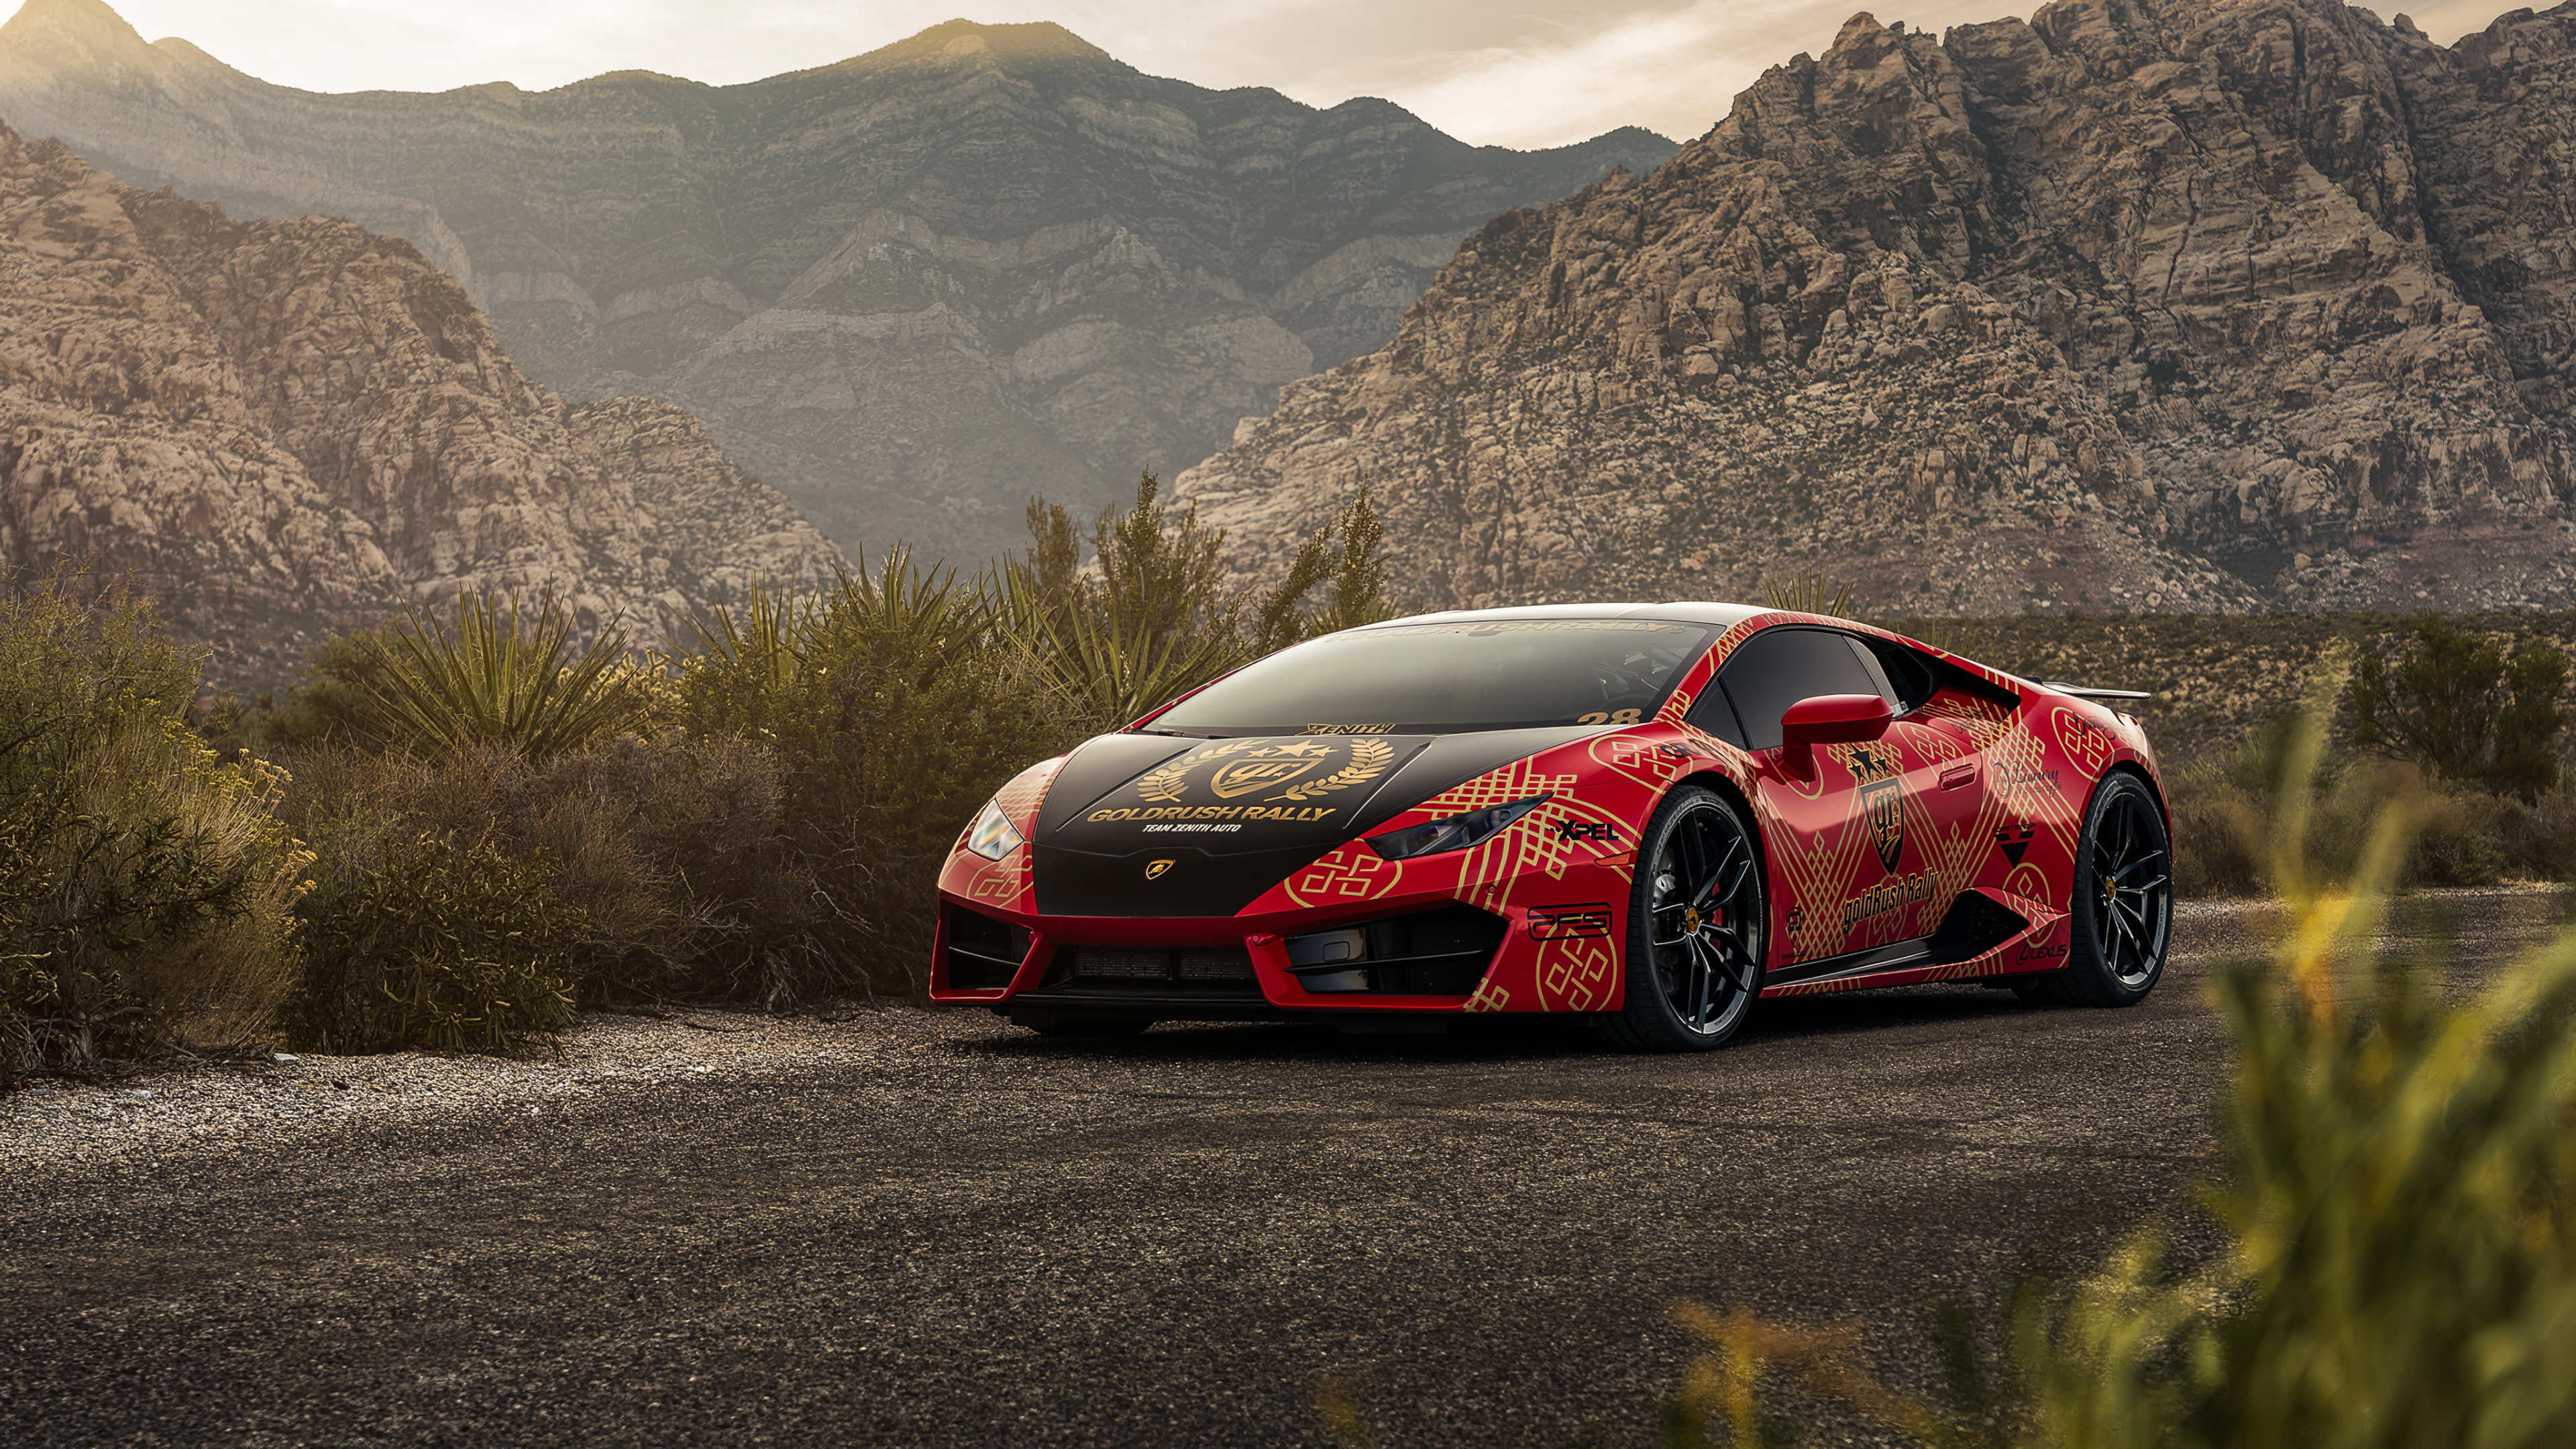 Lamborghini Huracan Red 2020 4k, HD Cars, 4k Wallpapers, Images